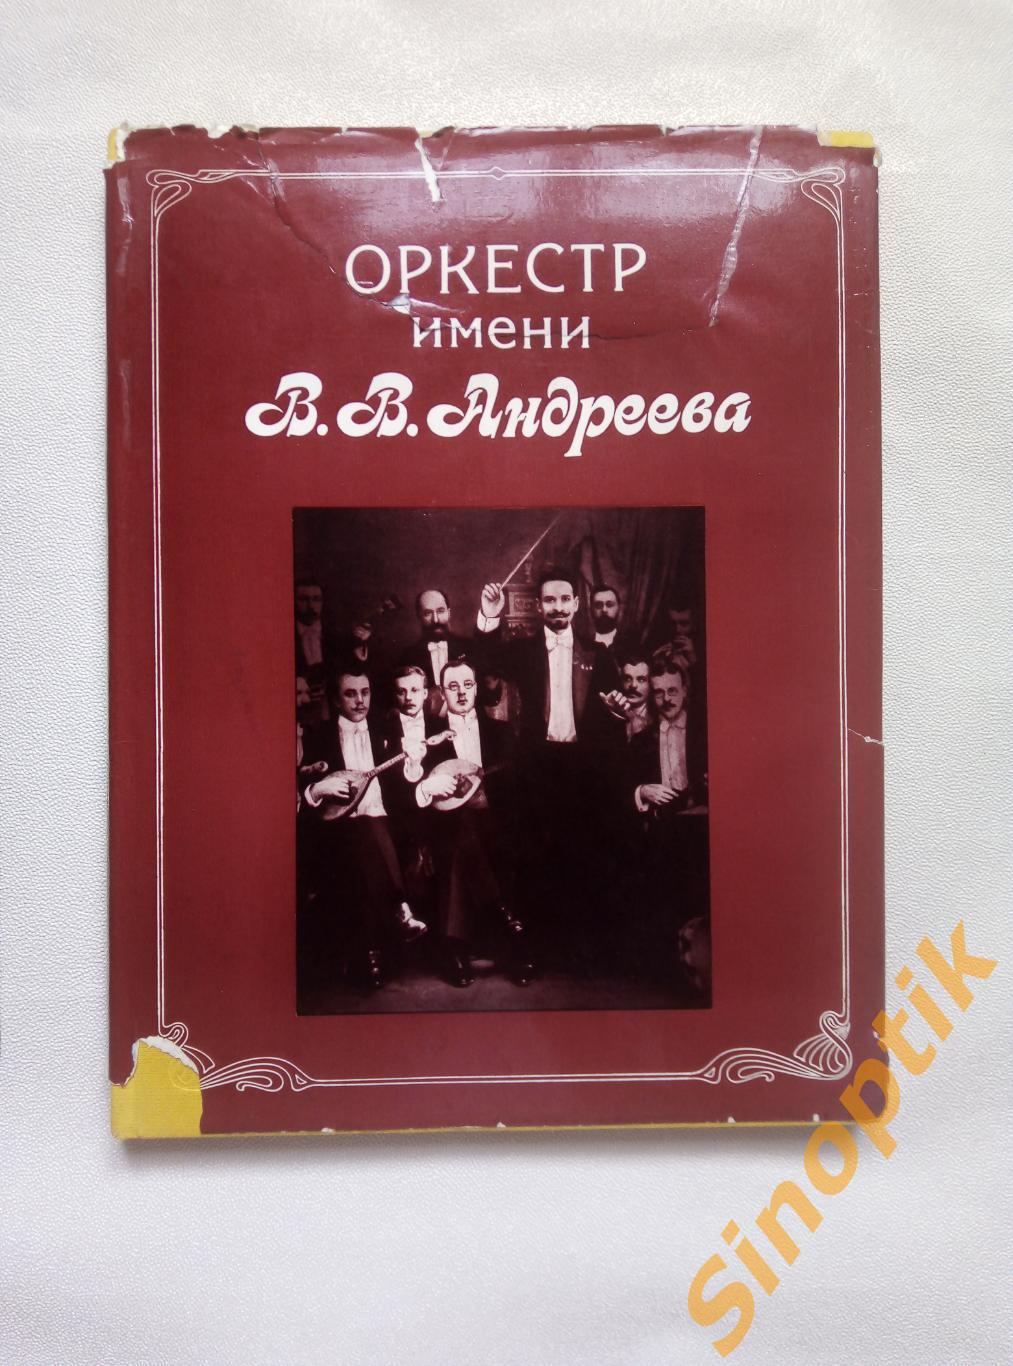 Оркестр имени В. В. Андреева, 1987